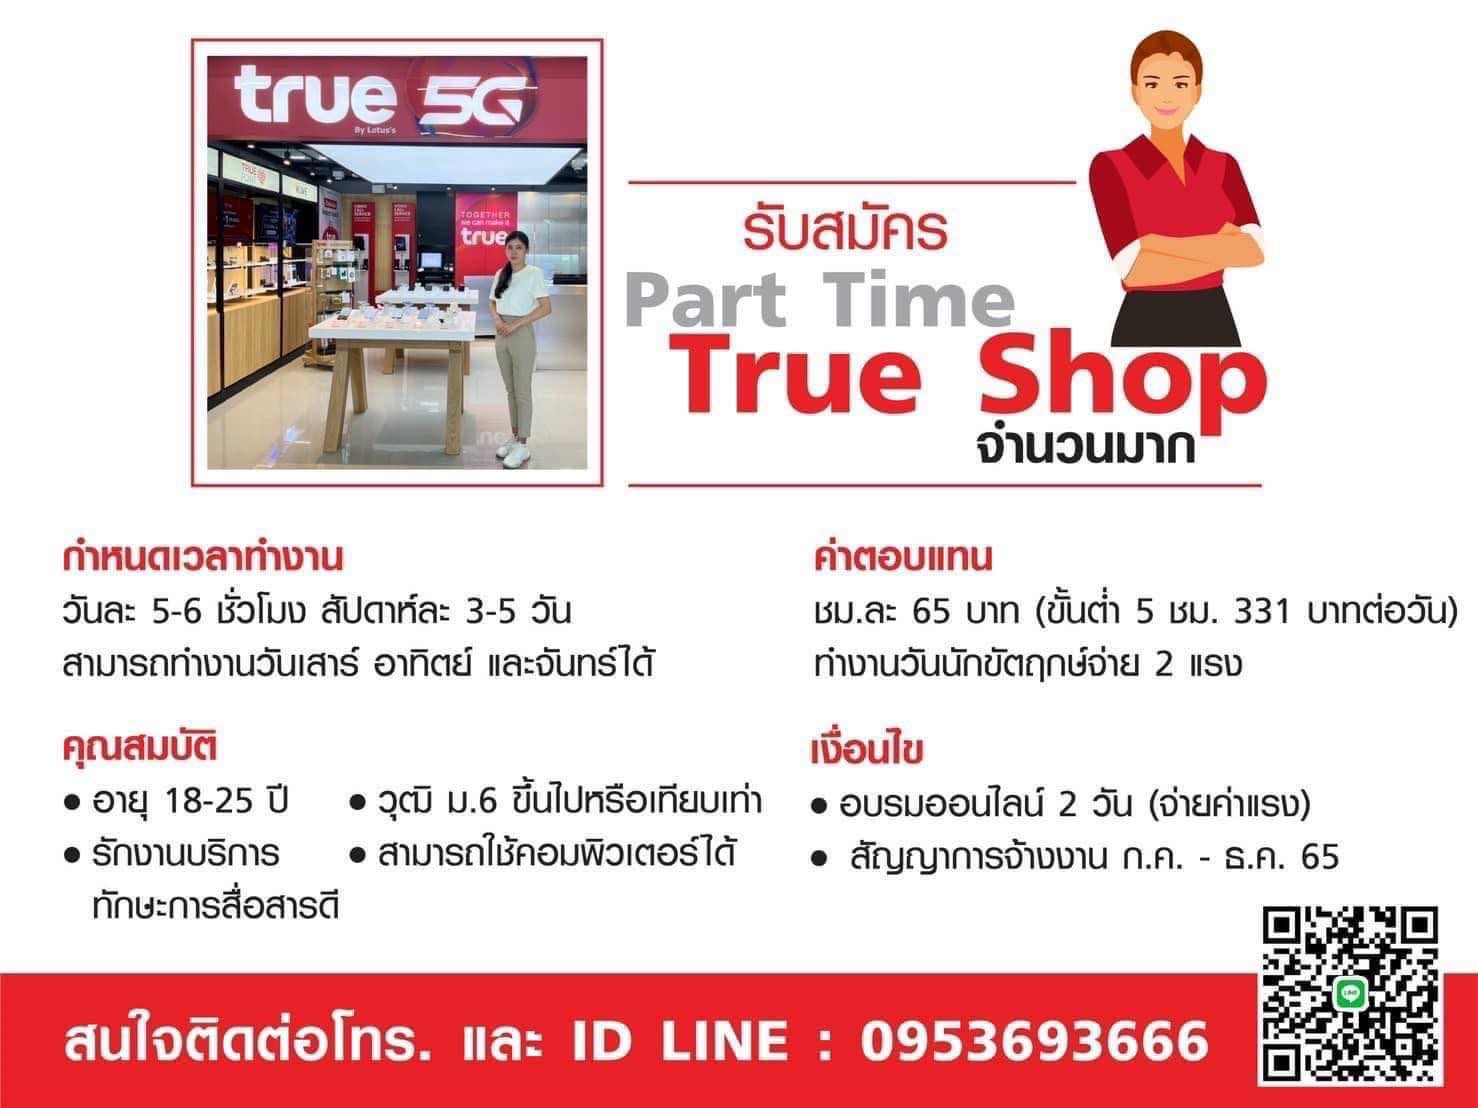 True Shop เปิดรับพนักงาน Part Time จำนวนมาก